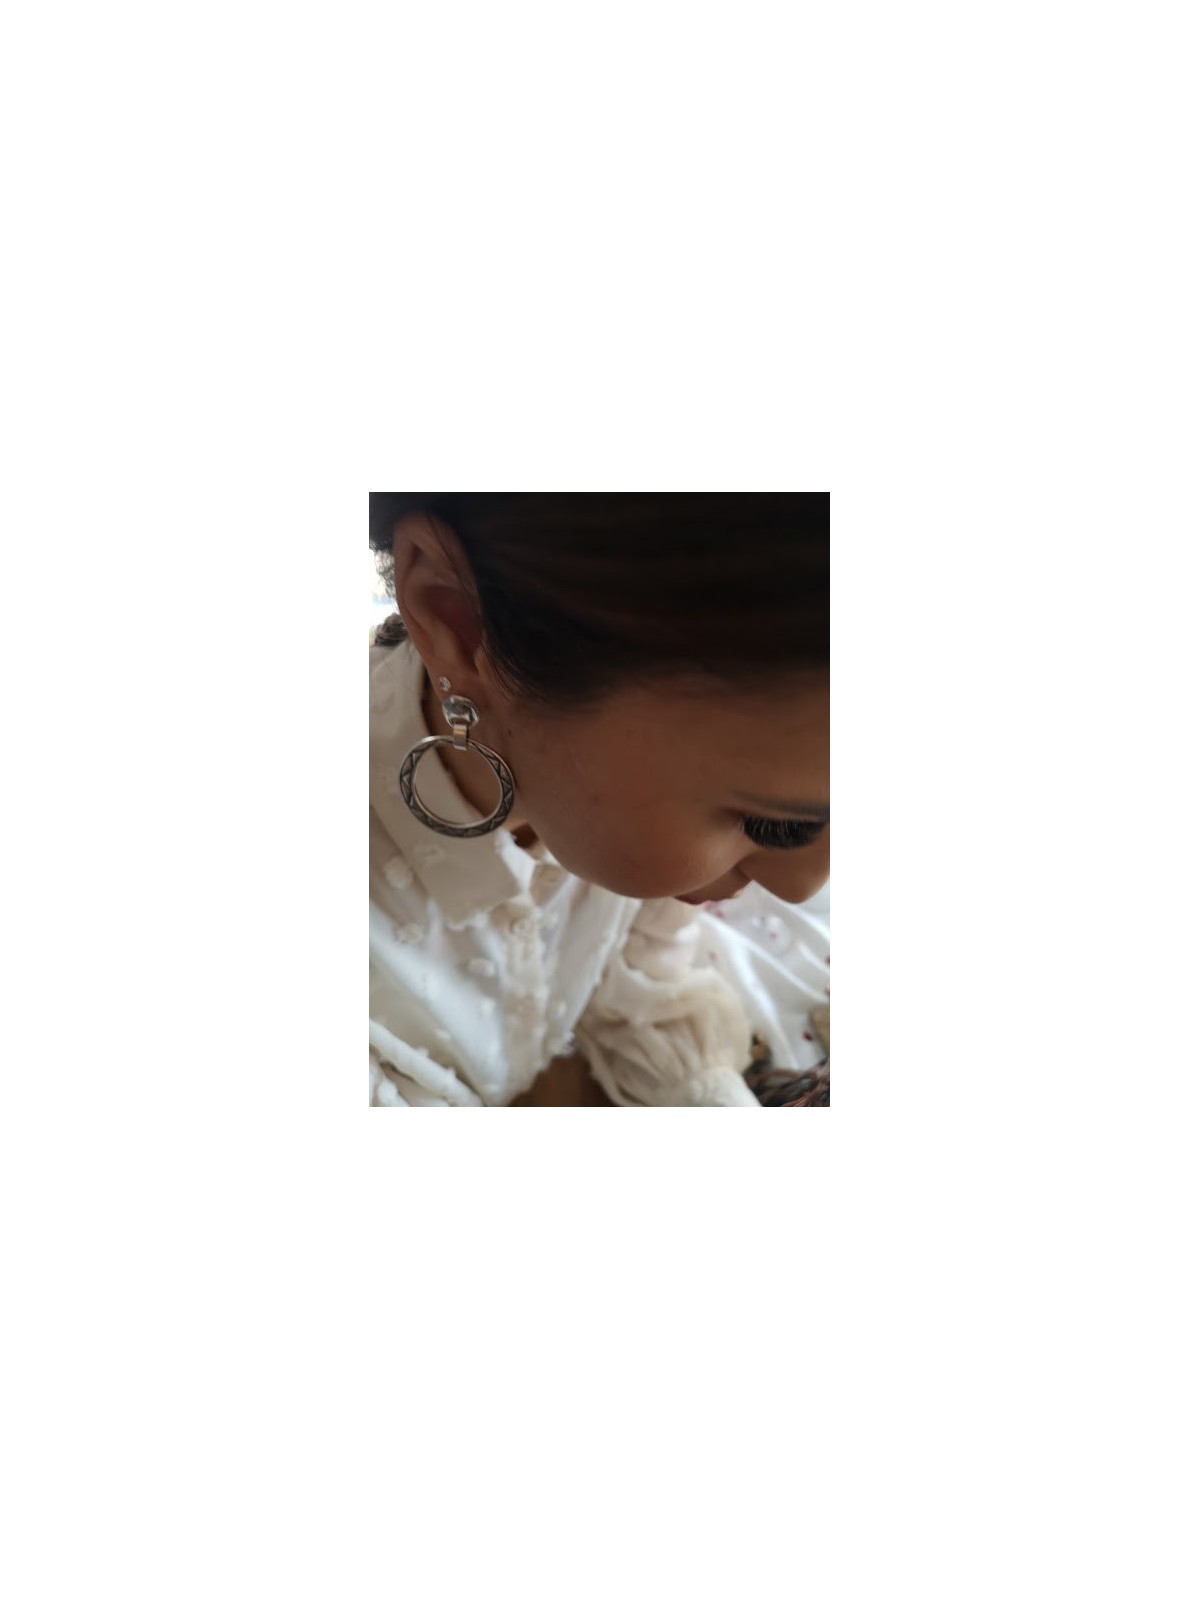 Collection Eclipse boucles d'oreilles Ciclon plaqué argent l 3 vue en contre plongée l Tilleulmenthe boutique de mode femme